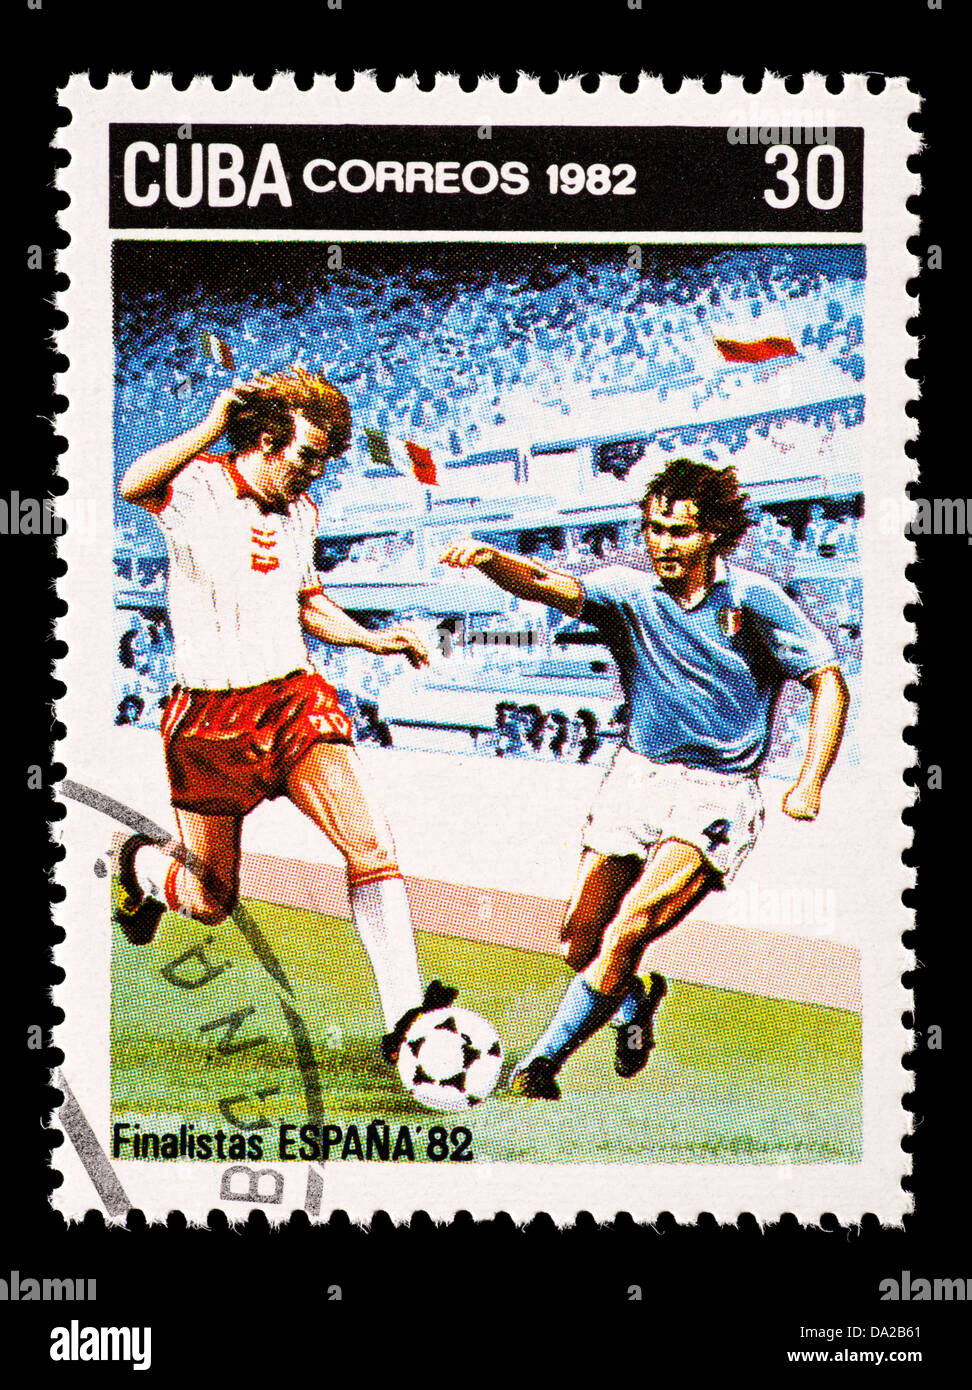 Timbre-poste représentant de Cuba joueurs football (soccer), émis pour la Coupe du Monde 1982 en Espagne. Banque D'Images